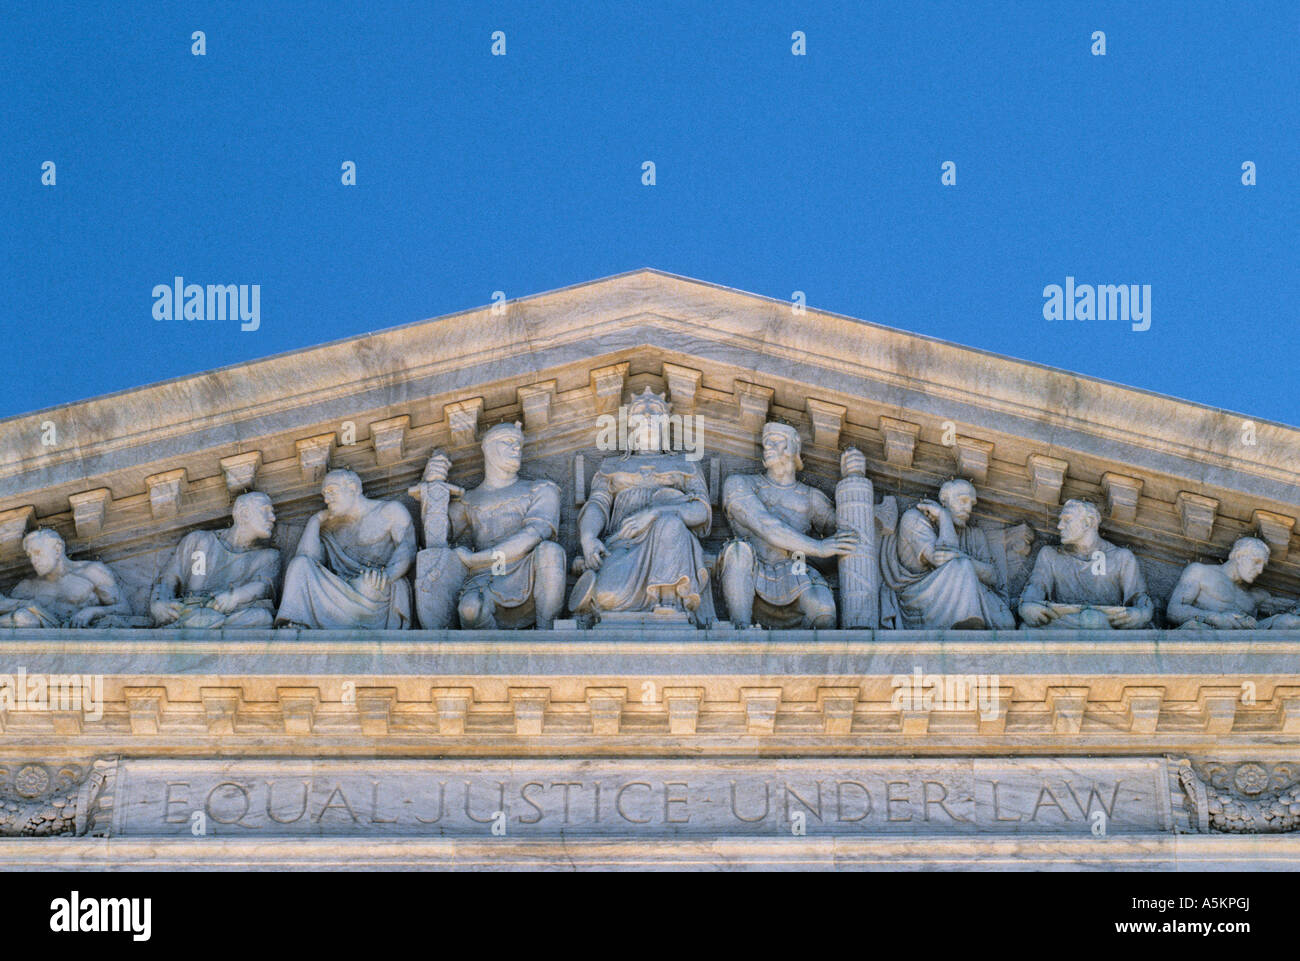 Washington DC das oberste Gericht der Vereinigten Staaten von Amerika Regierung Gebäude Stockfoto